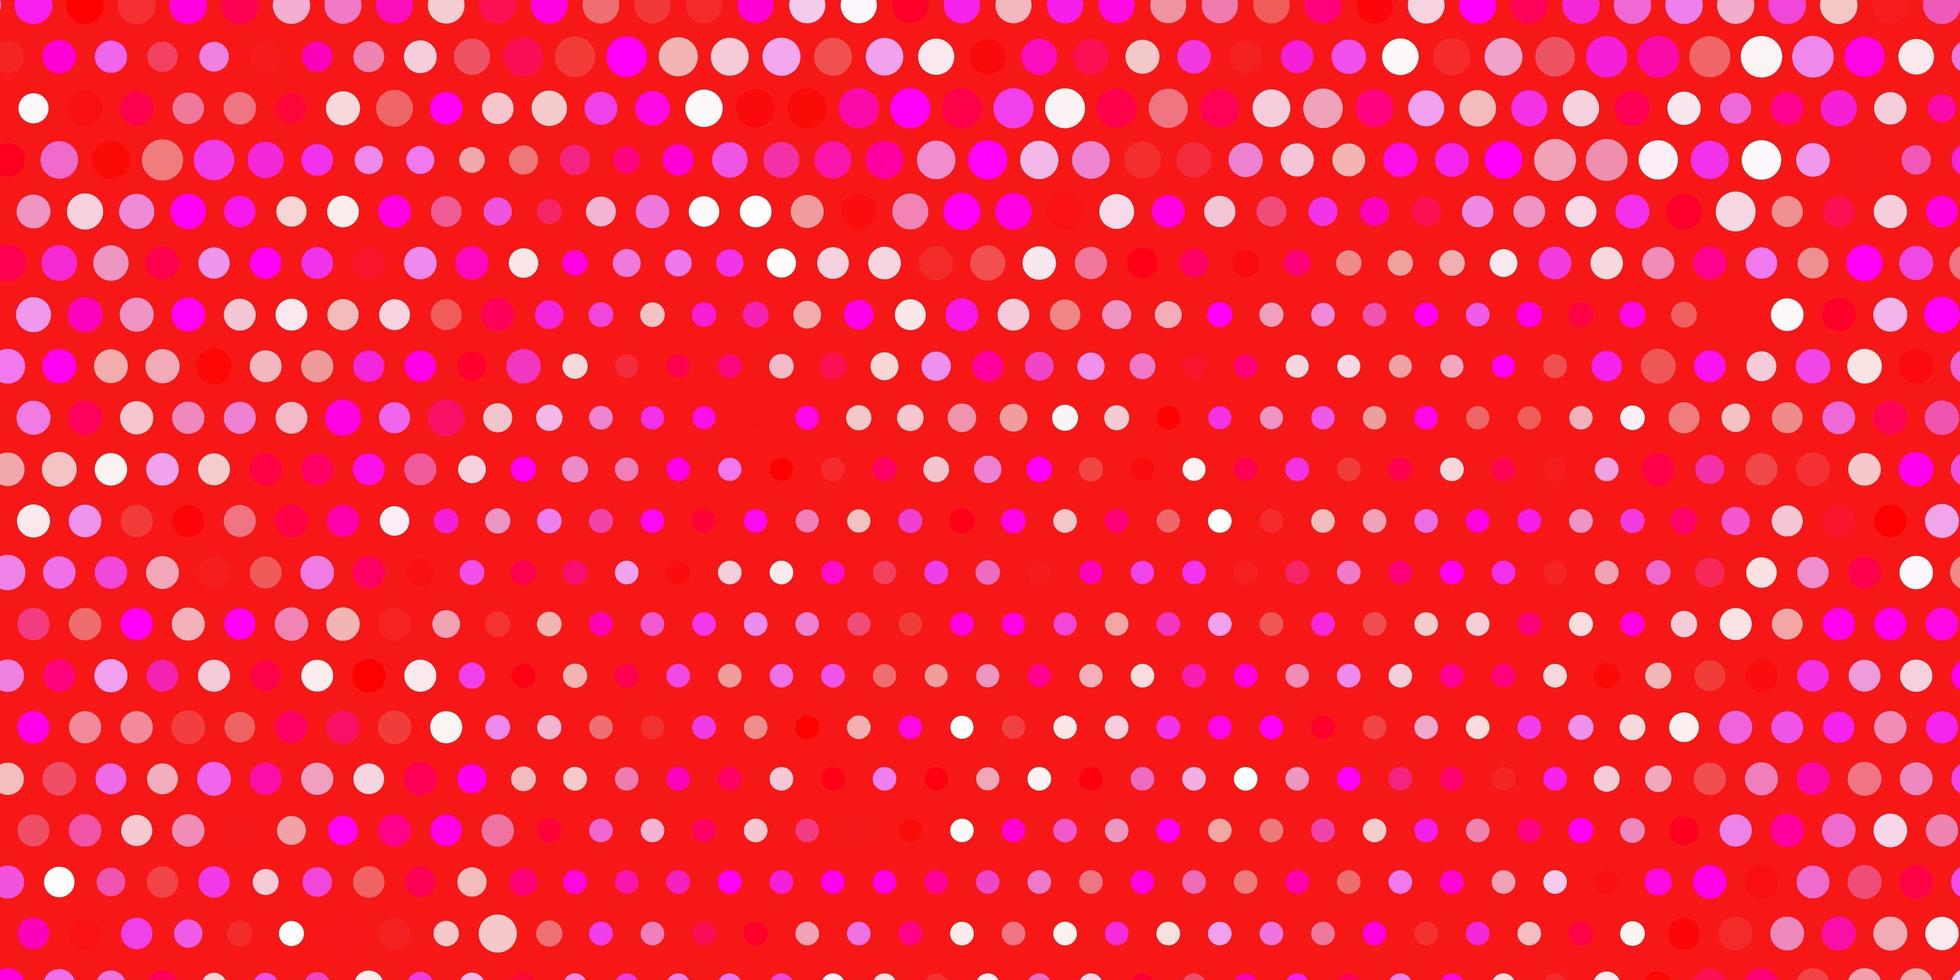 textura de vetor rosa, vermelho claro com discos.